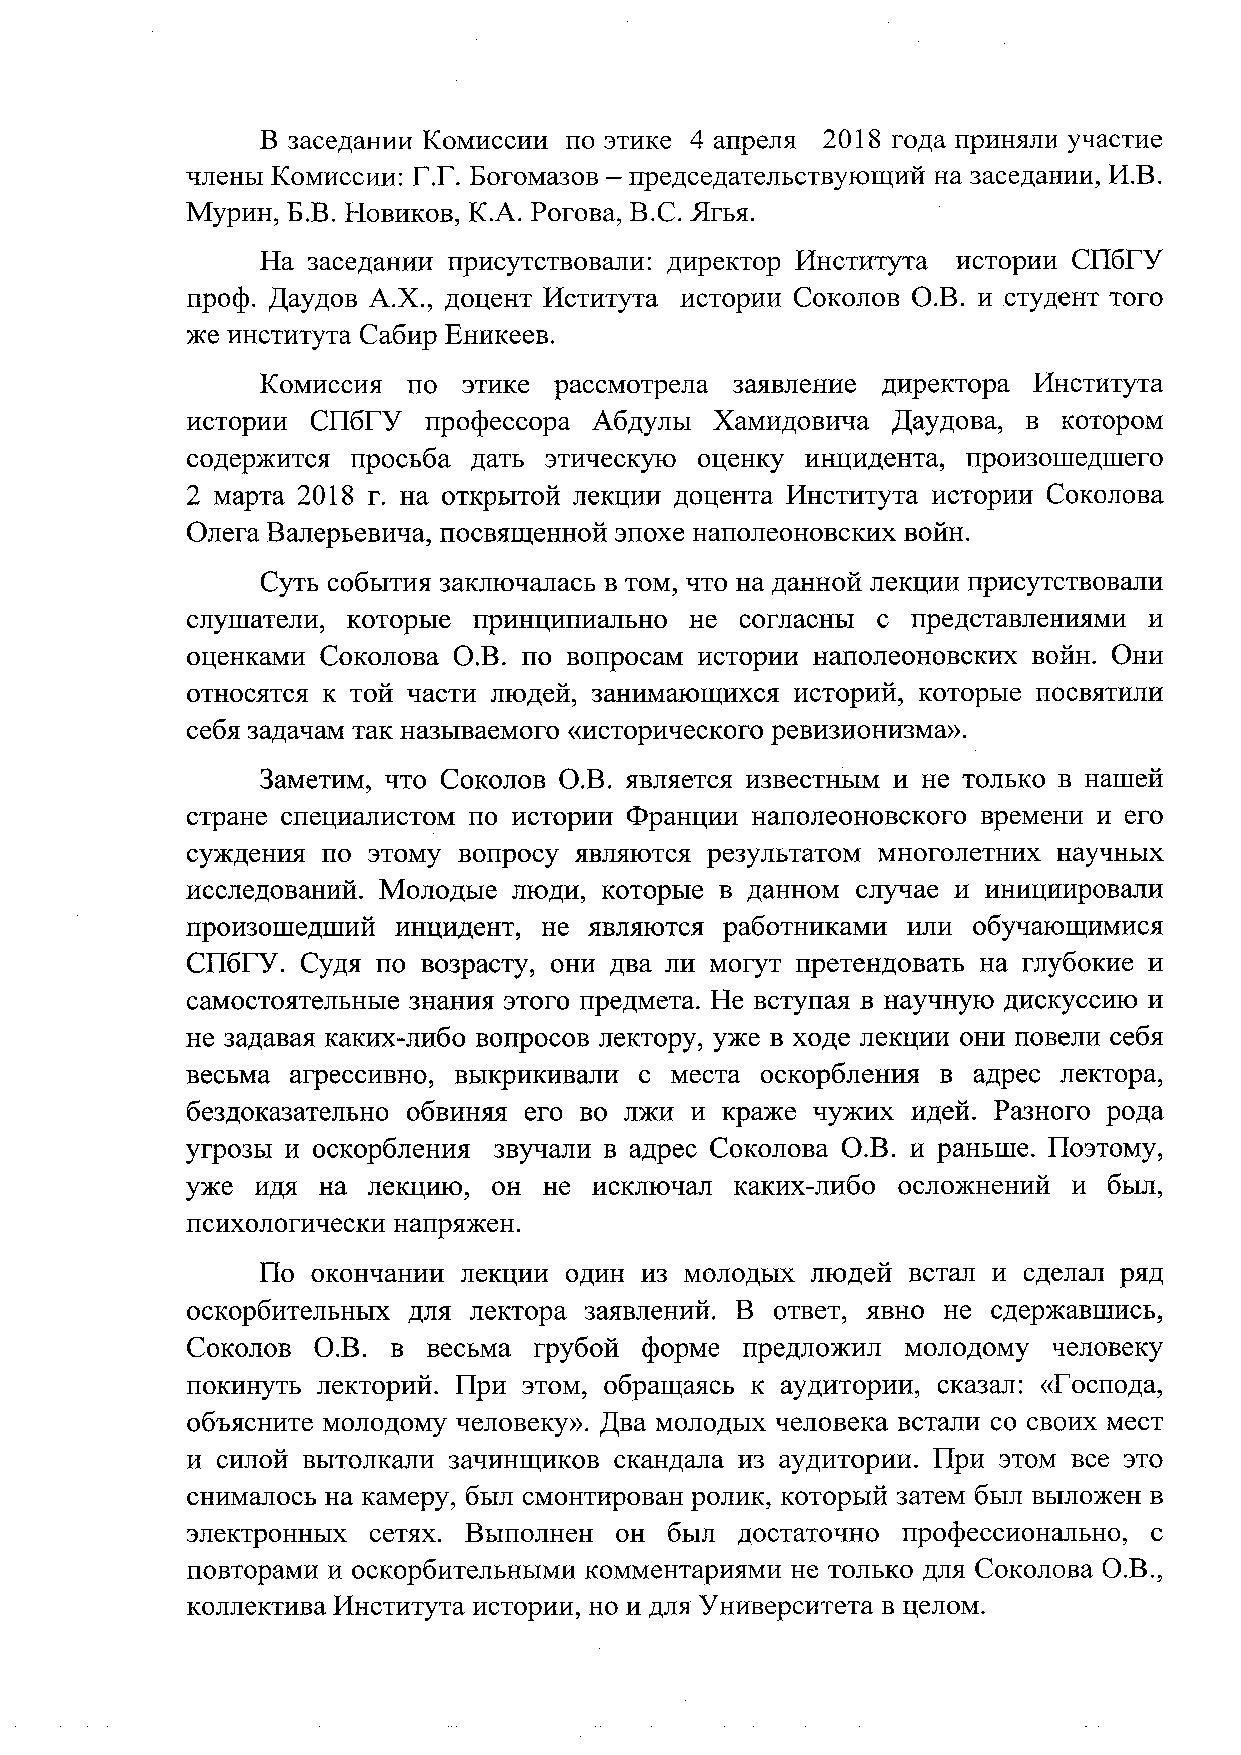 Решение комиссии по этике Ученого совета Санкт-Петербургского государственного университета